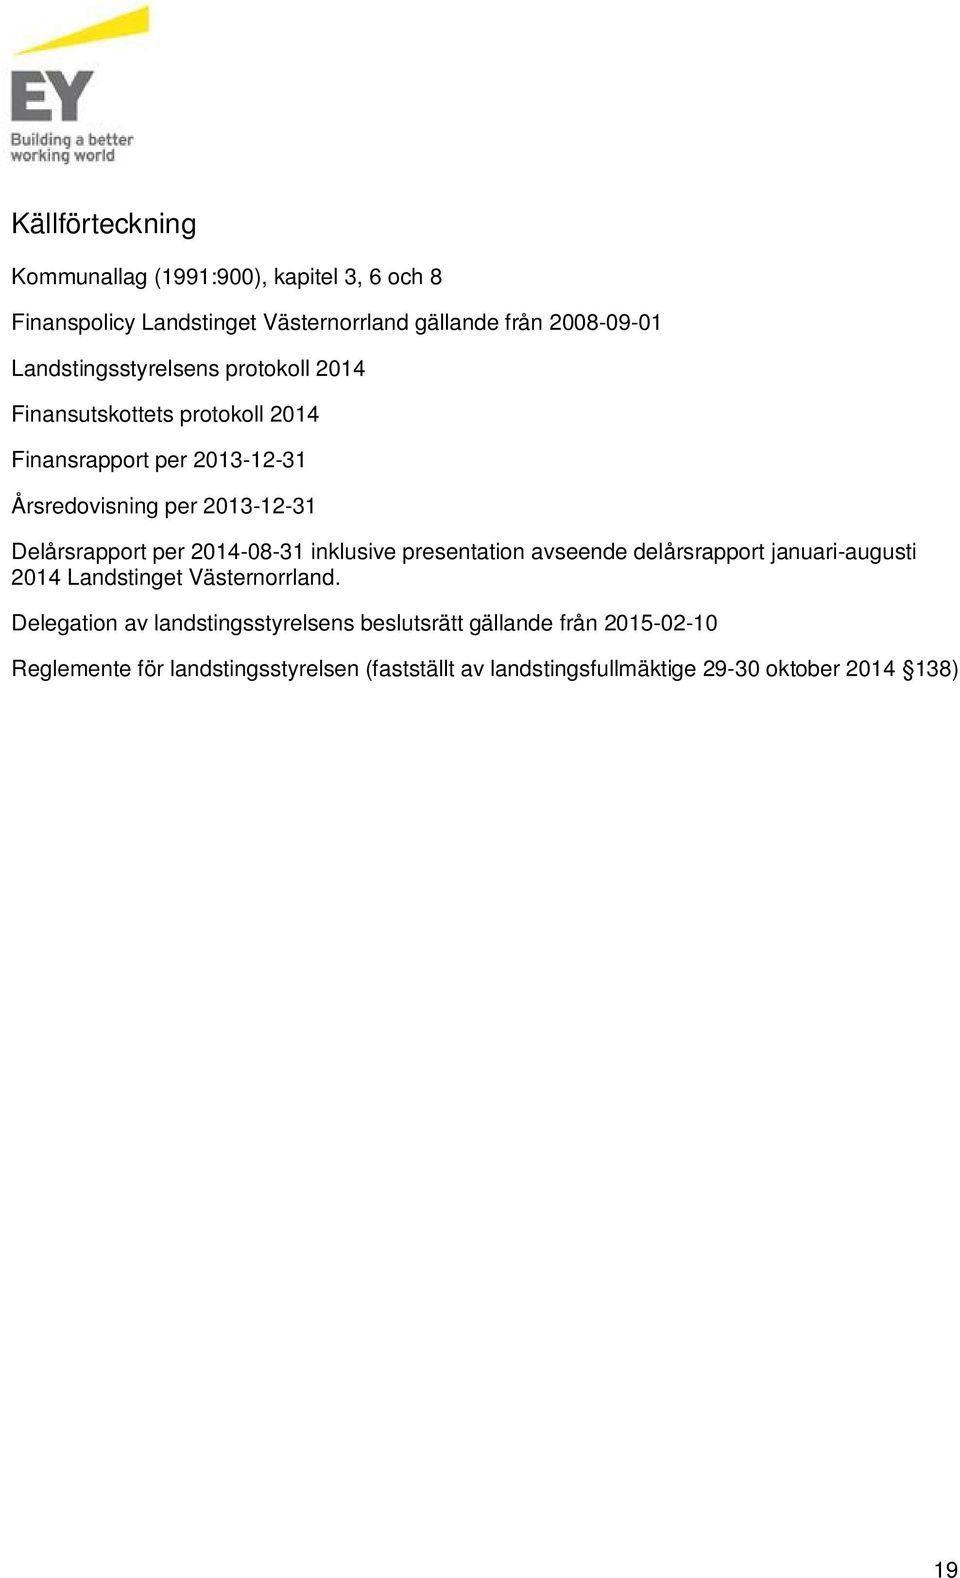 Delårsrapport per 2014-08-31 inklusive presentation avseende delårsrapport januari-augusti 2014 Landstinget Västernorrland.